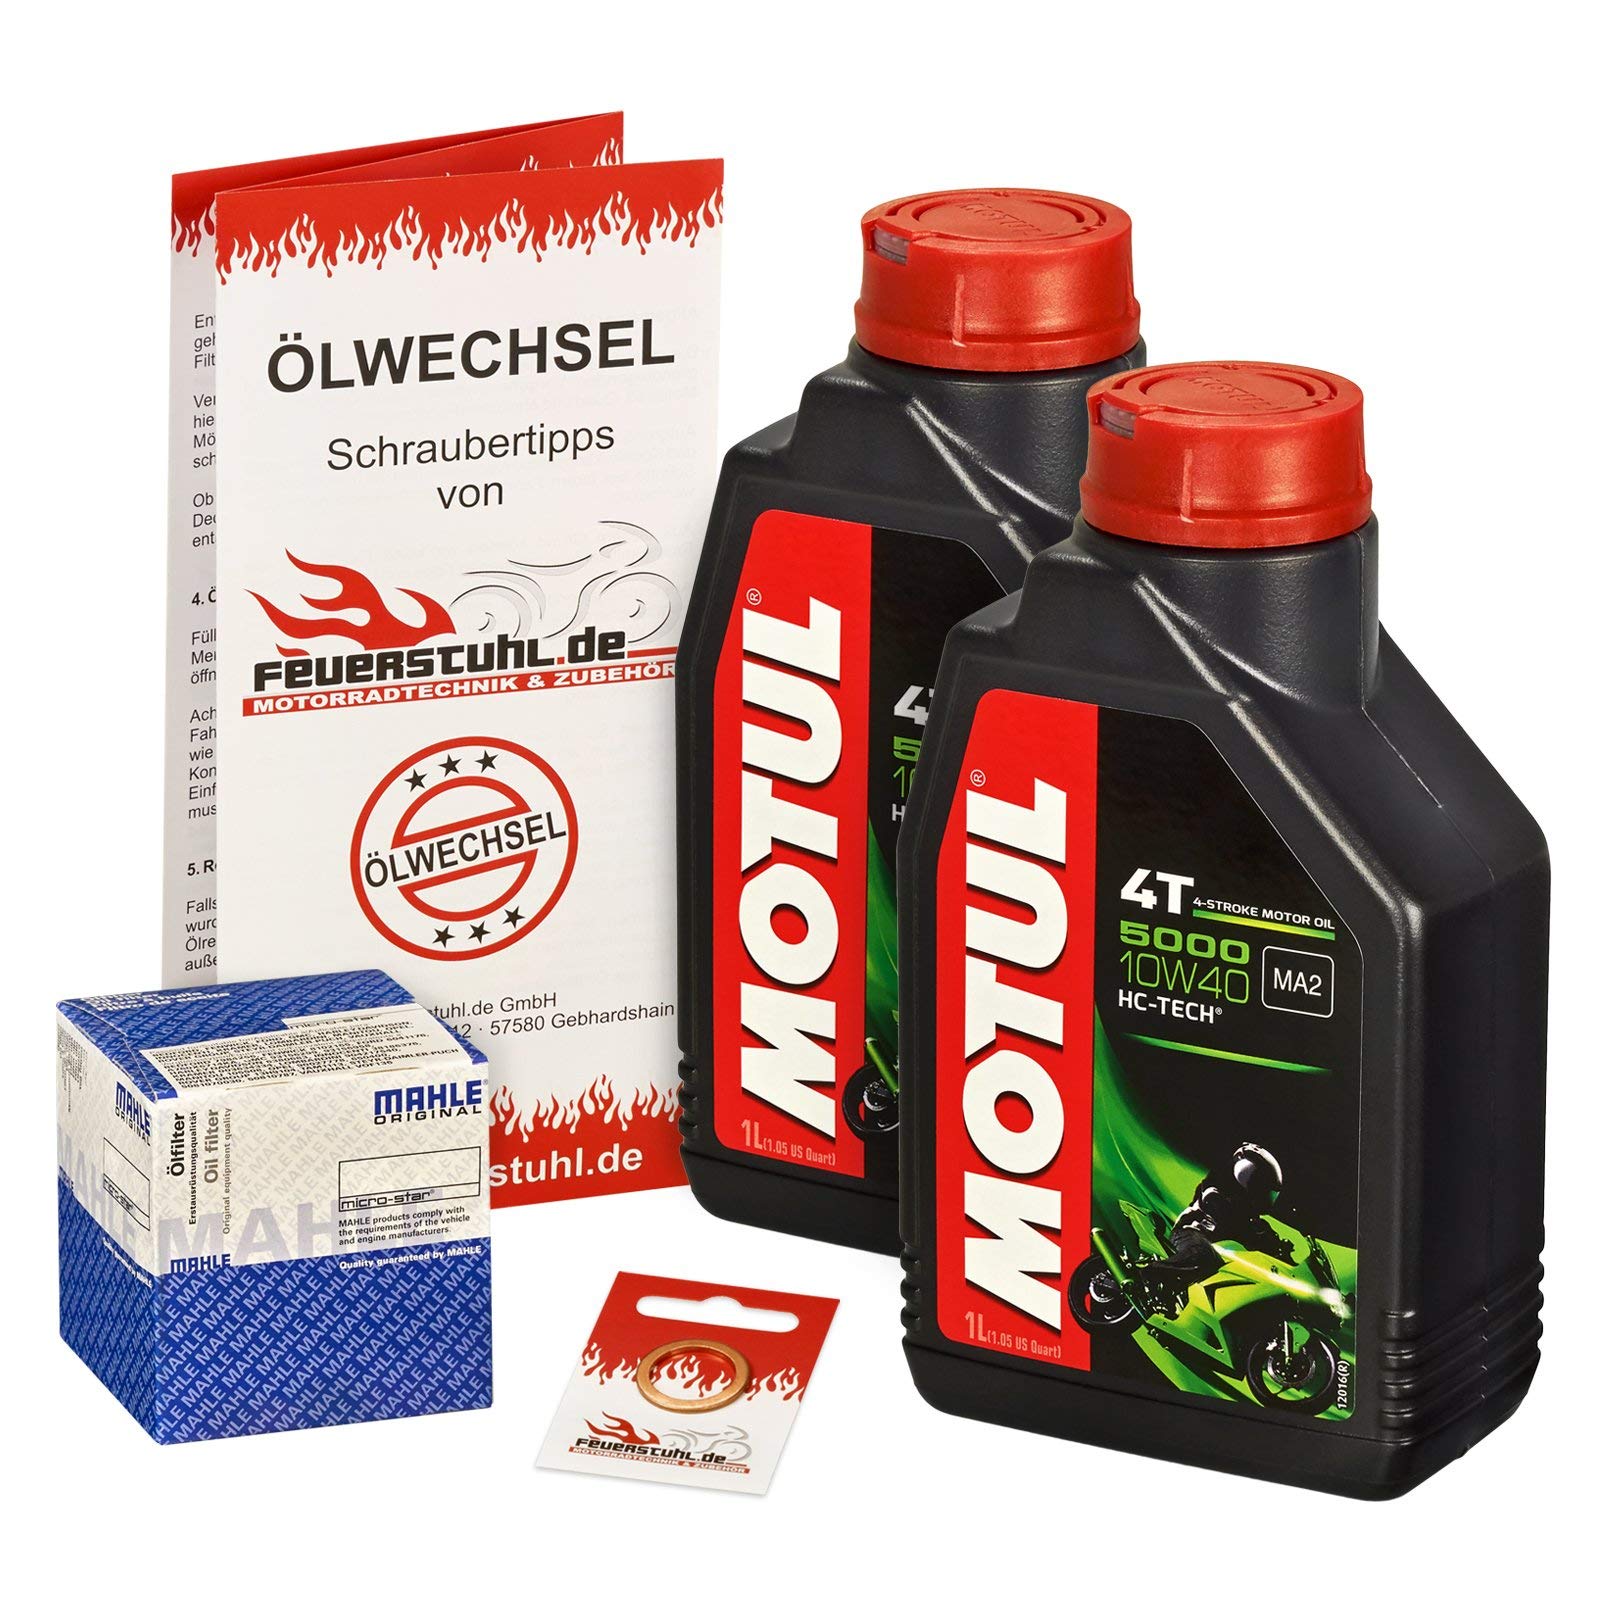 Motul 10W-40 Öl + Mahle Ölfilter für Suzuki VL 125 Intruder, 00-08, A4 - Ölwechselset inkl. Motoröl, Filter, Dichtring von Feuerstuhl.de GmbH